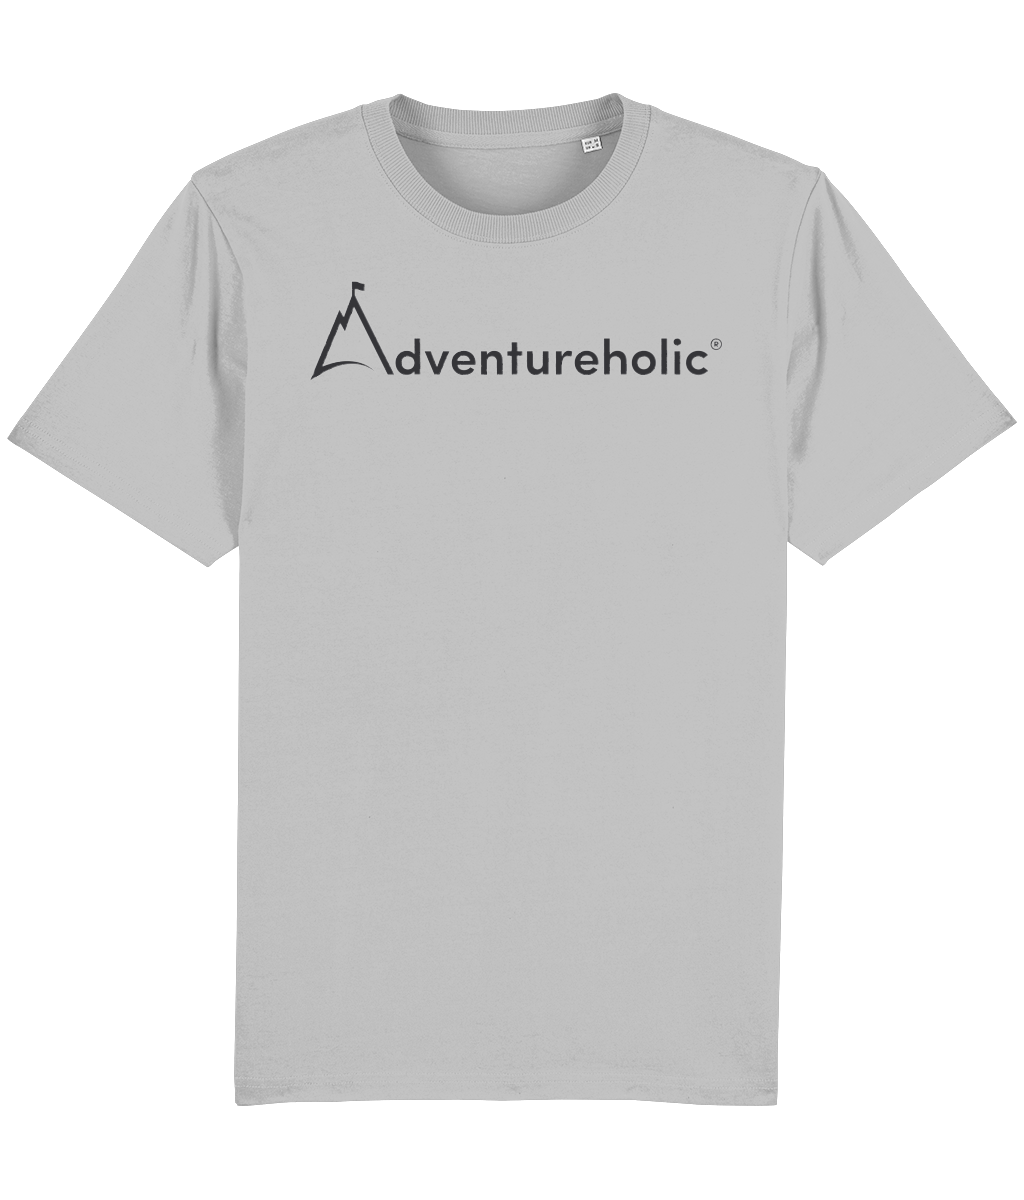 Adventureholic Unisex Tee-Shirt - Dark Print